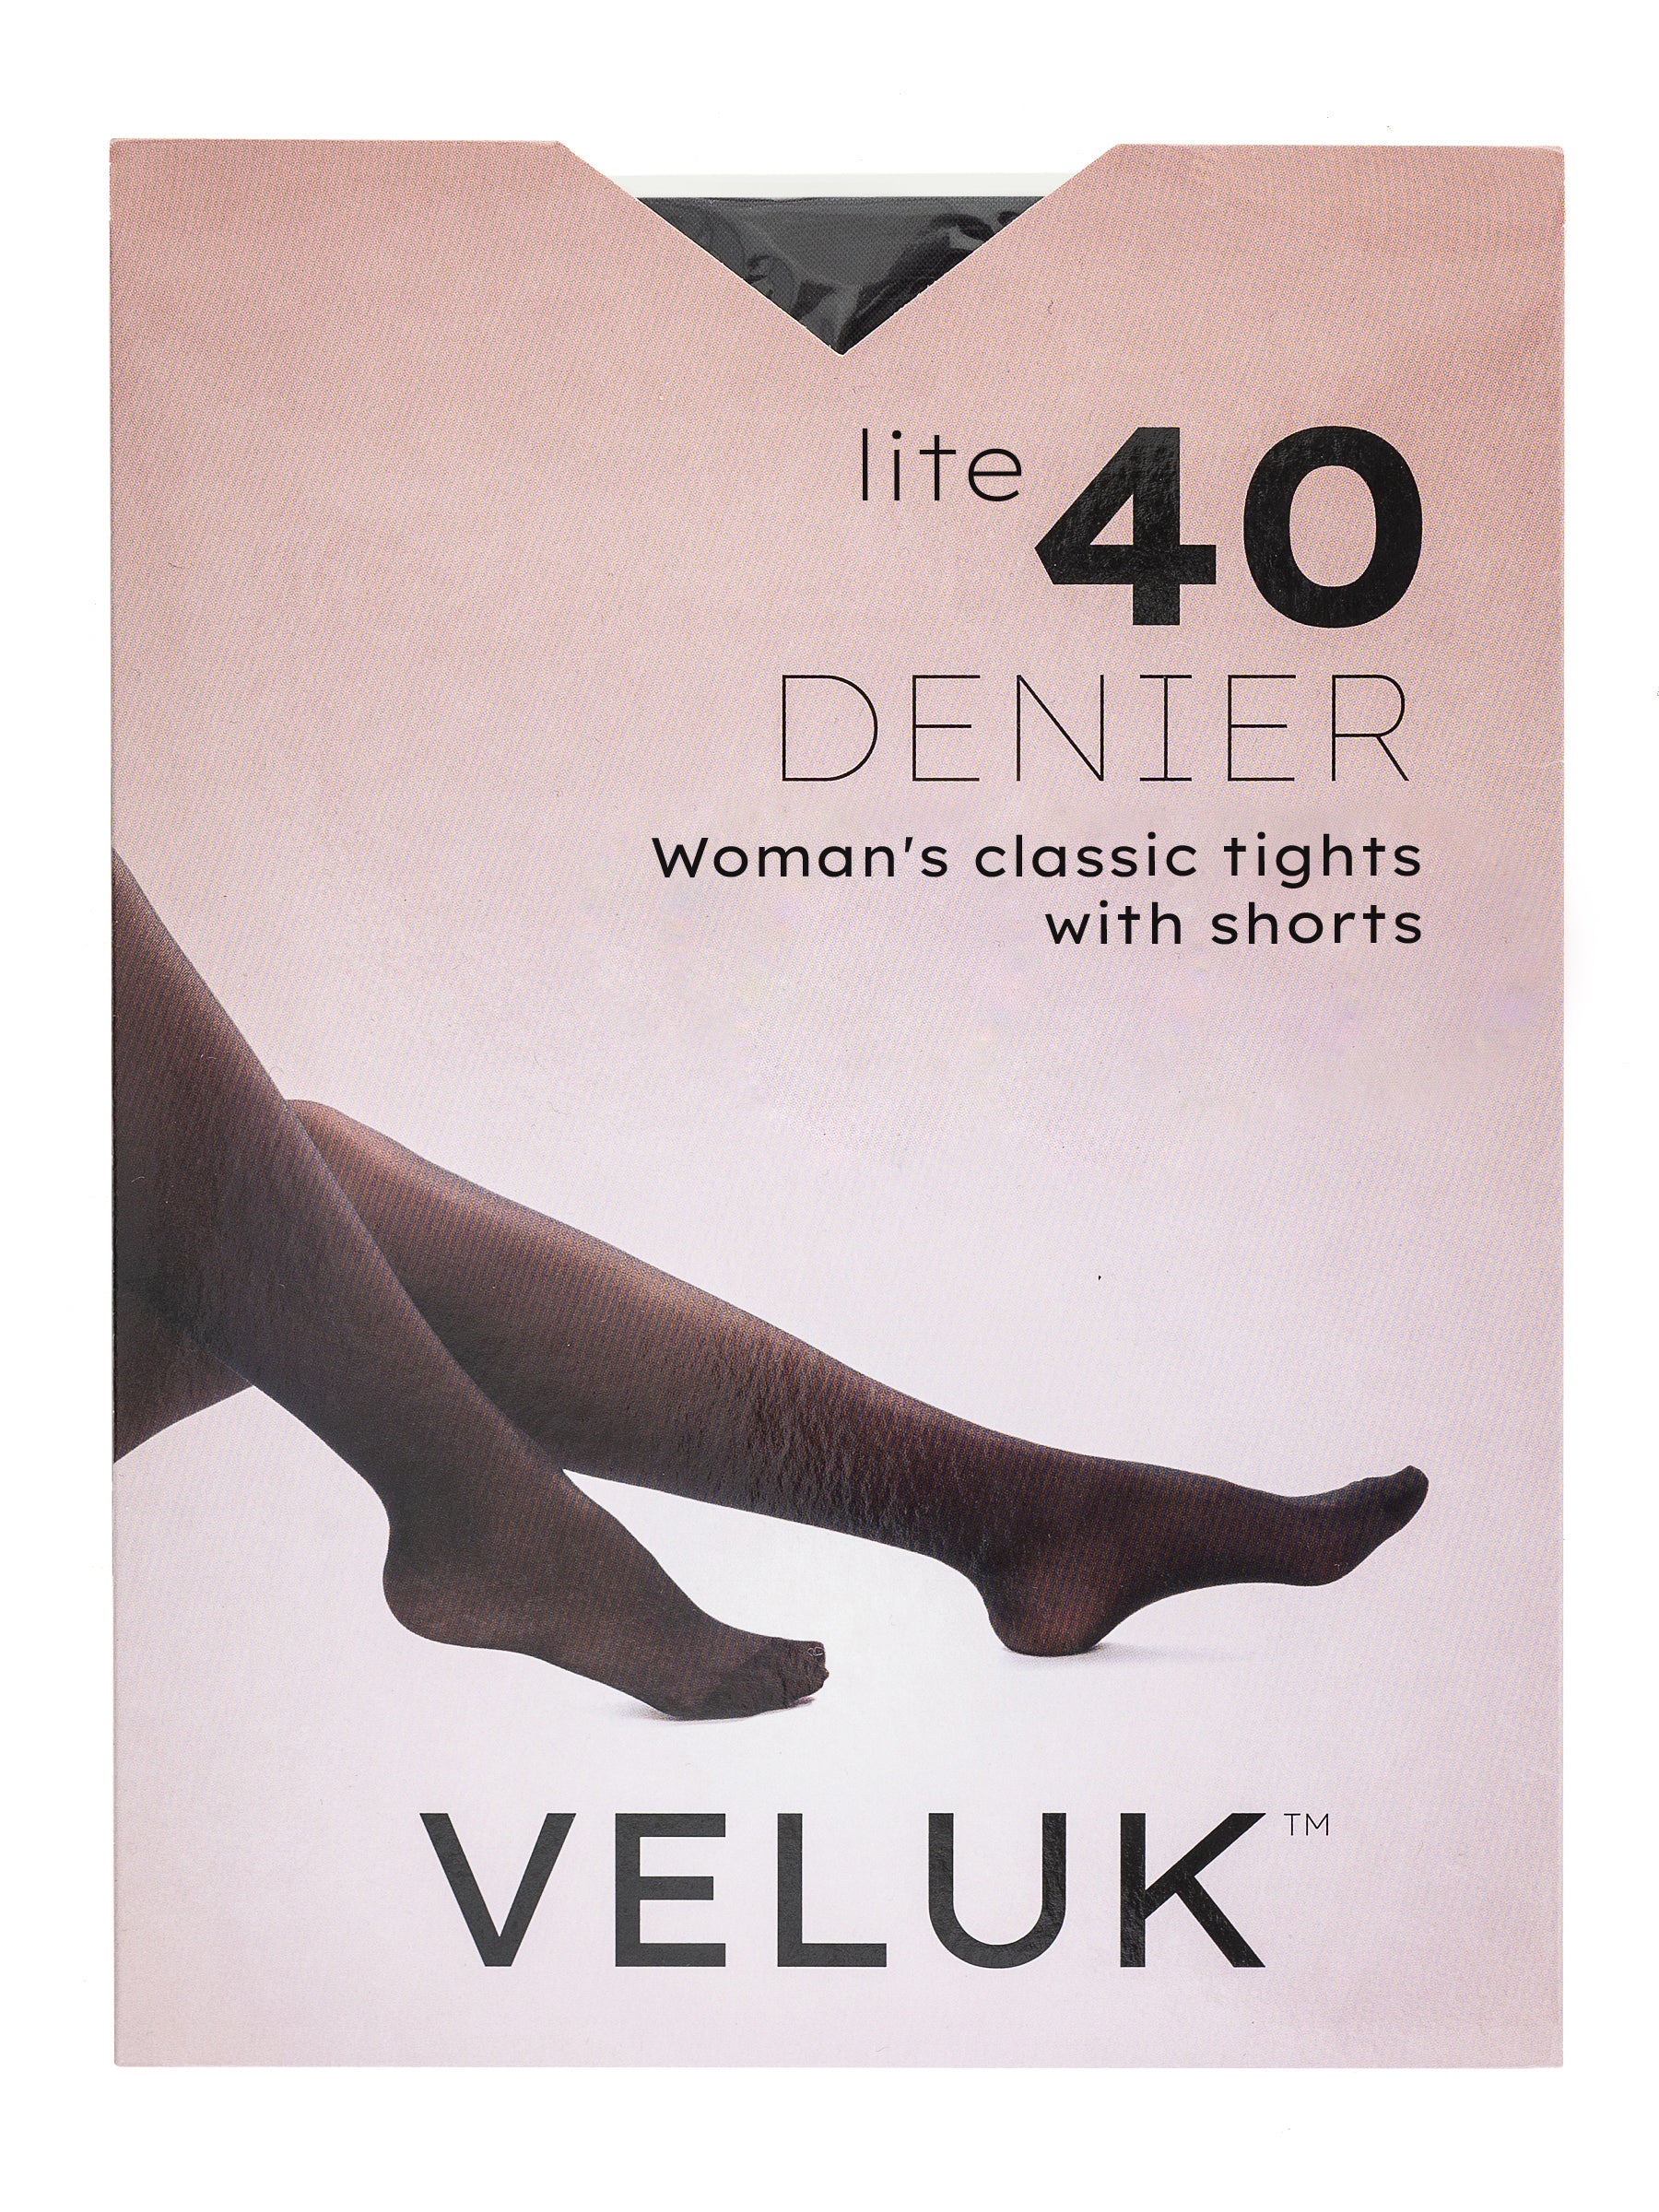 Veluk Sheer Tights For Women Lite 40 Denier